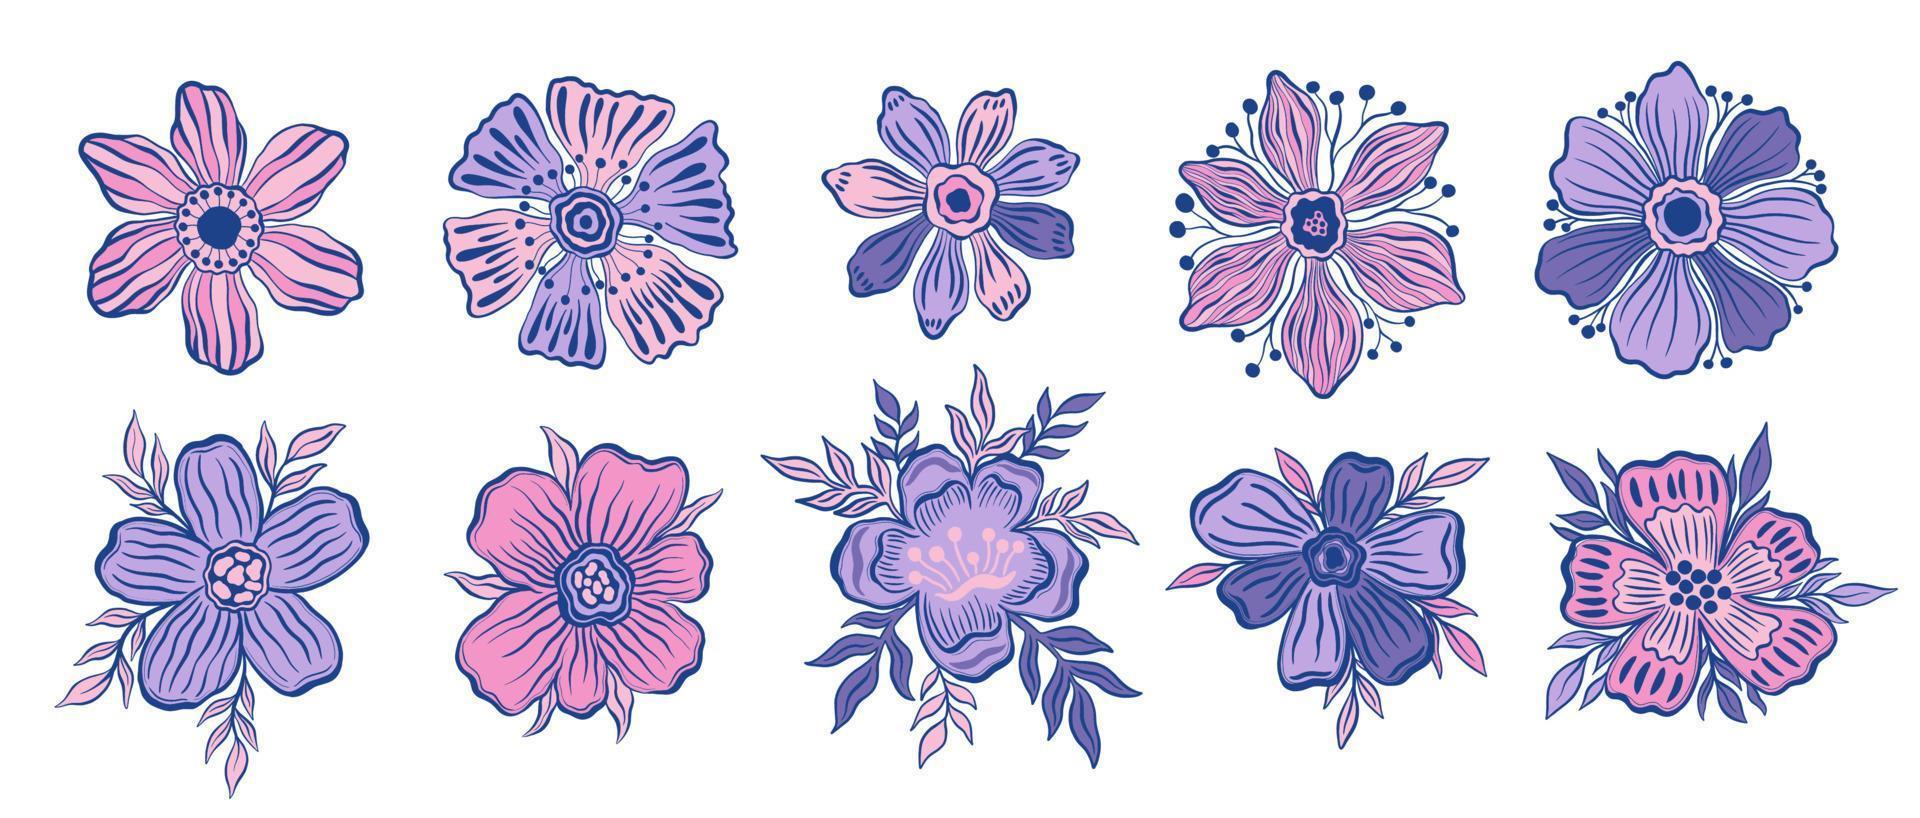 Establecer estilo de dibujos animados de capullos de flores.Aislado en fondo blanco.Planta floral de colección. vector